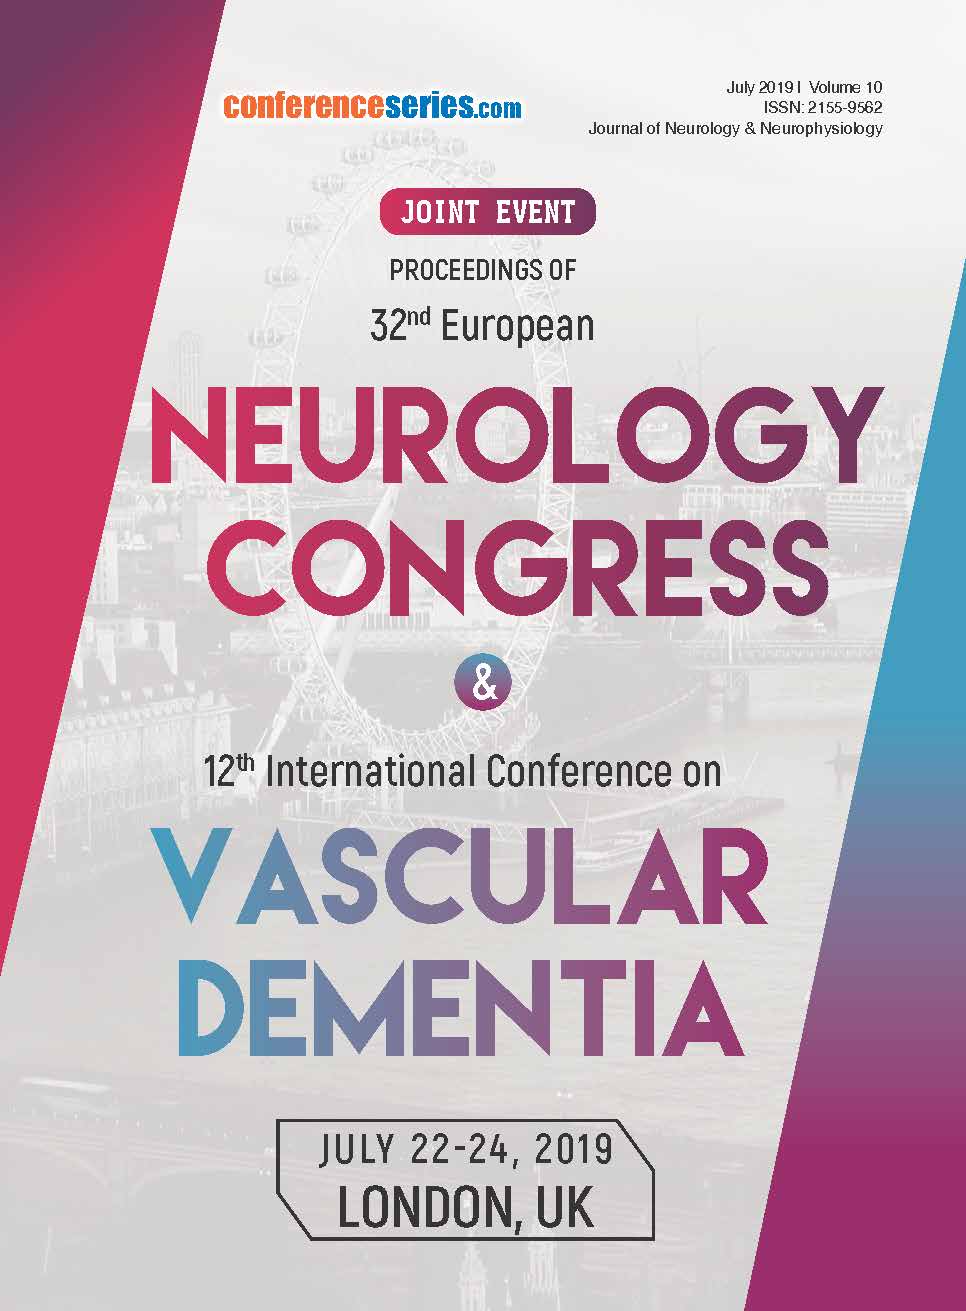 Neurology Congress 2019